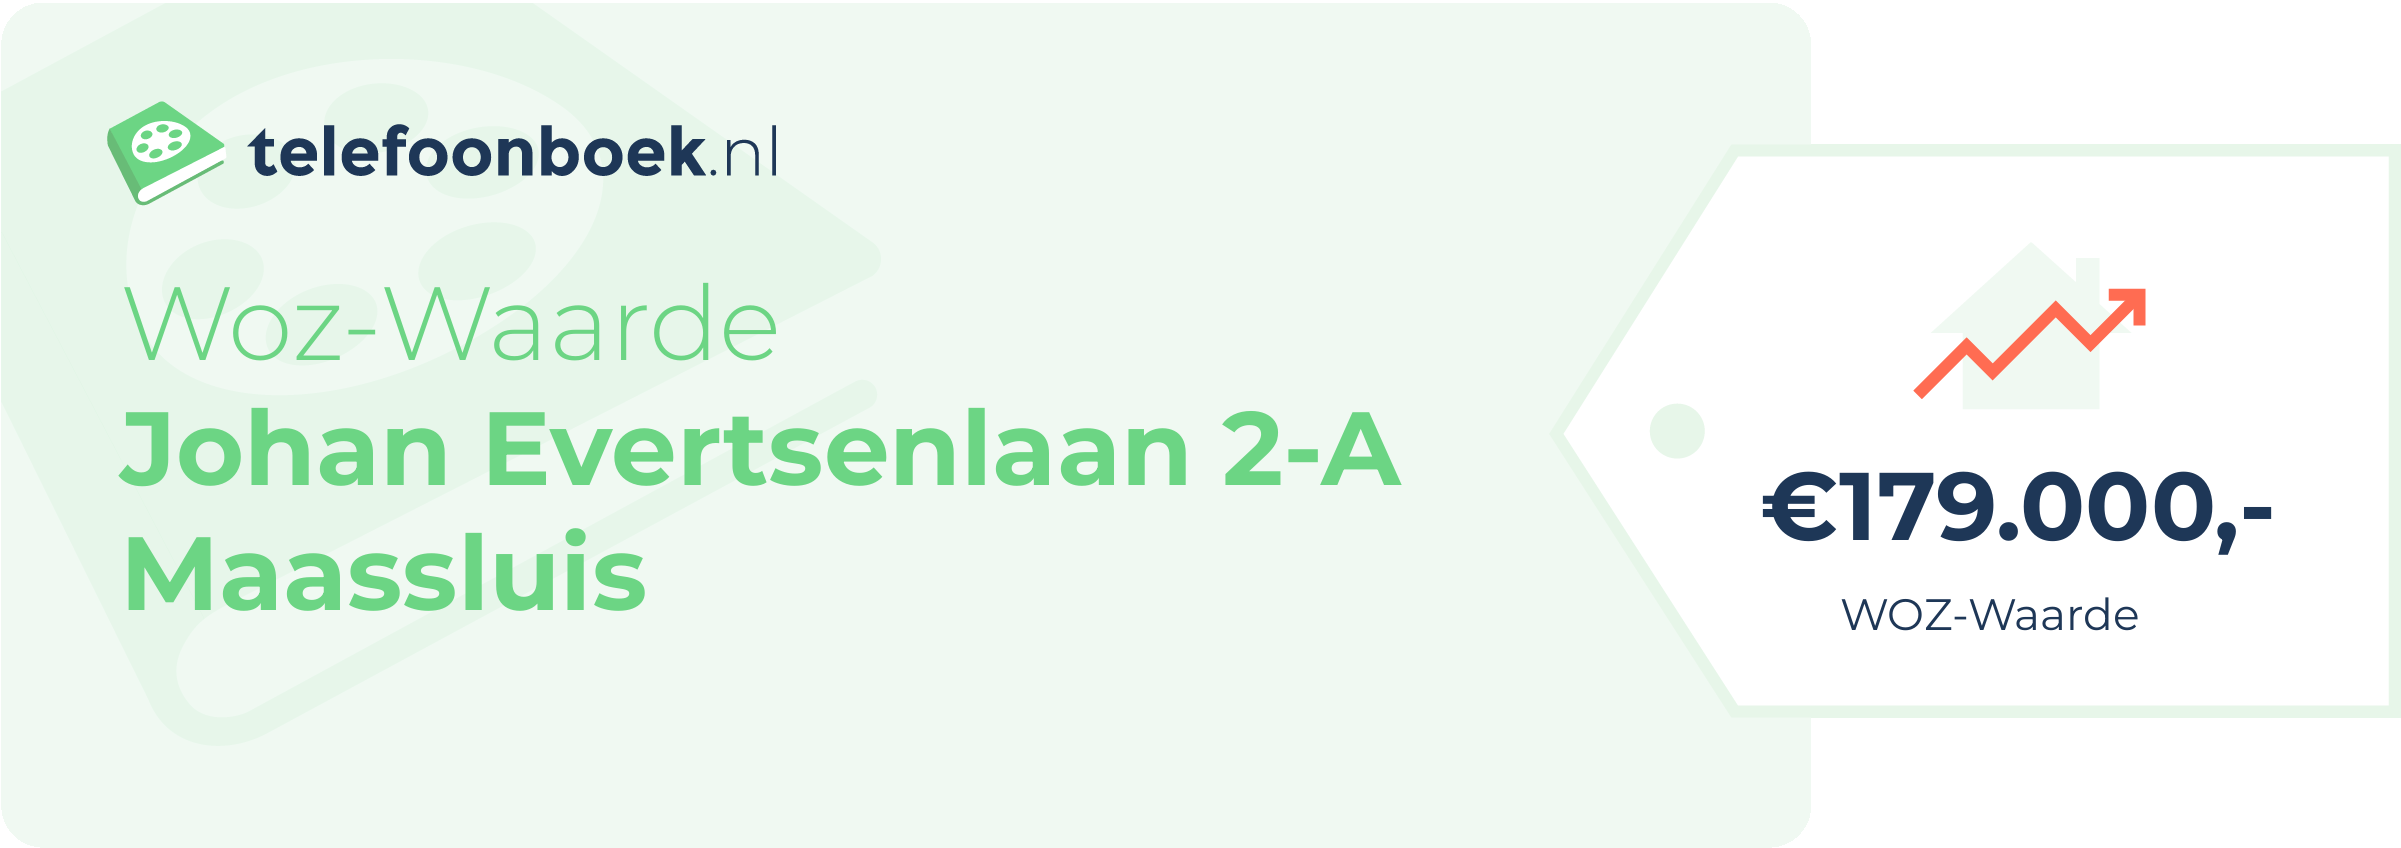 WOZ-waarde Johan Evertsenlaan 2-A Maassluis